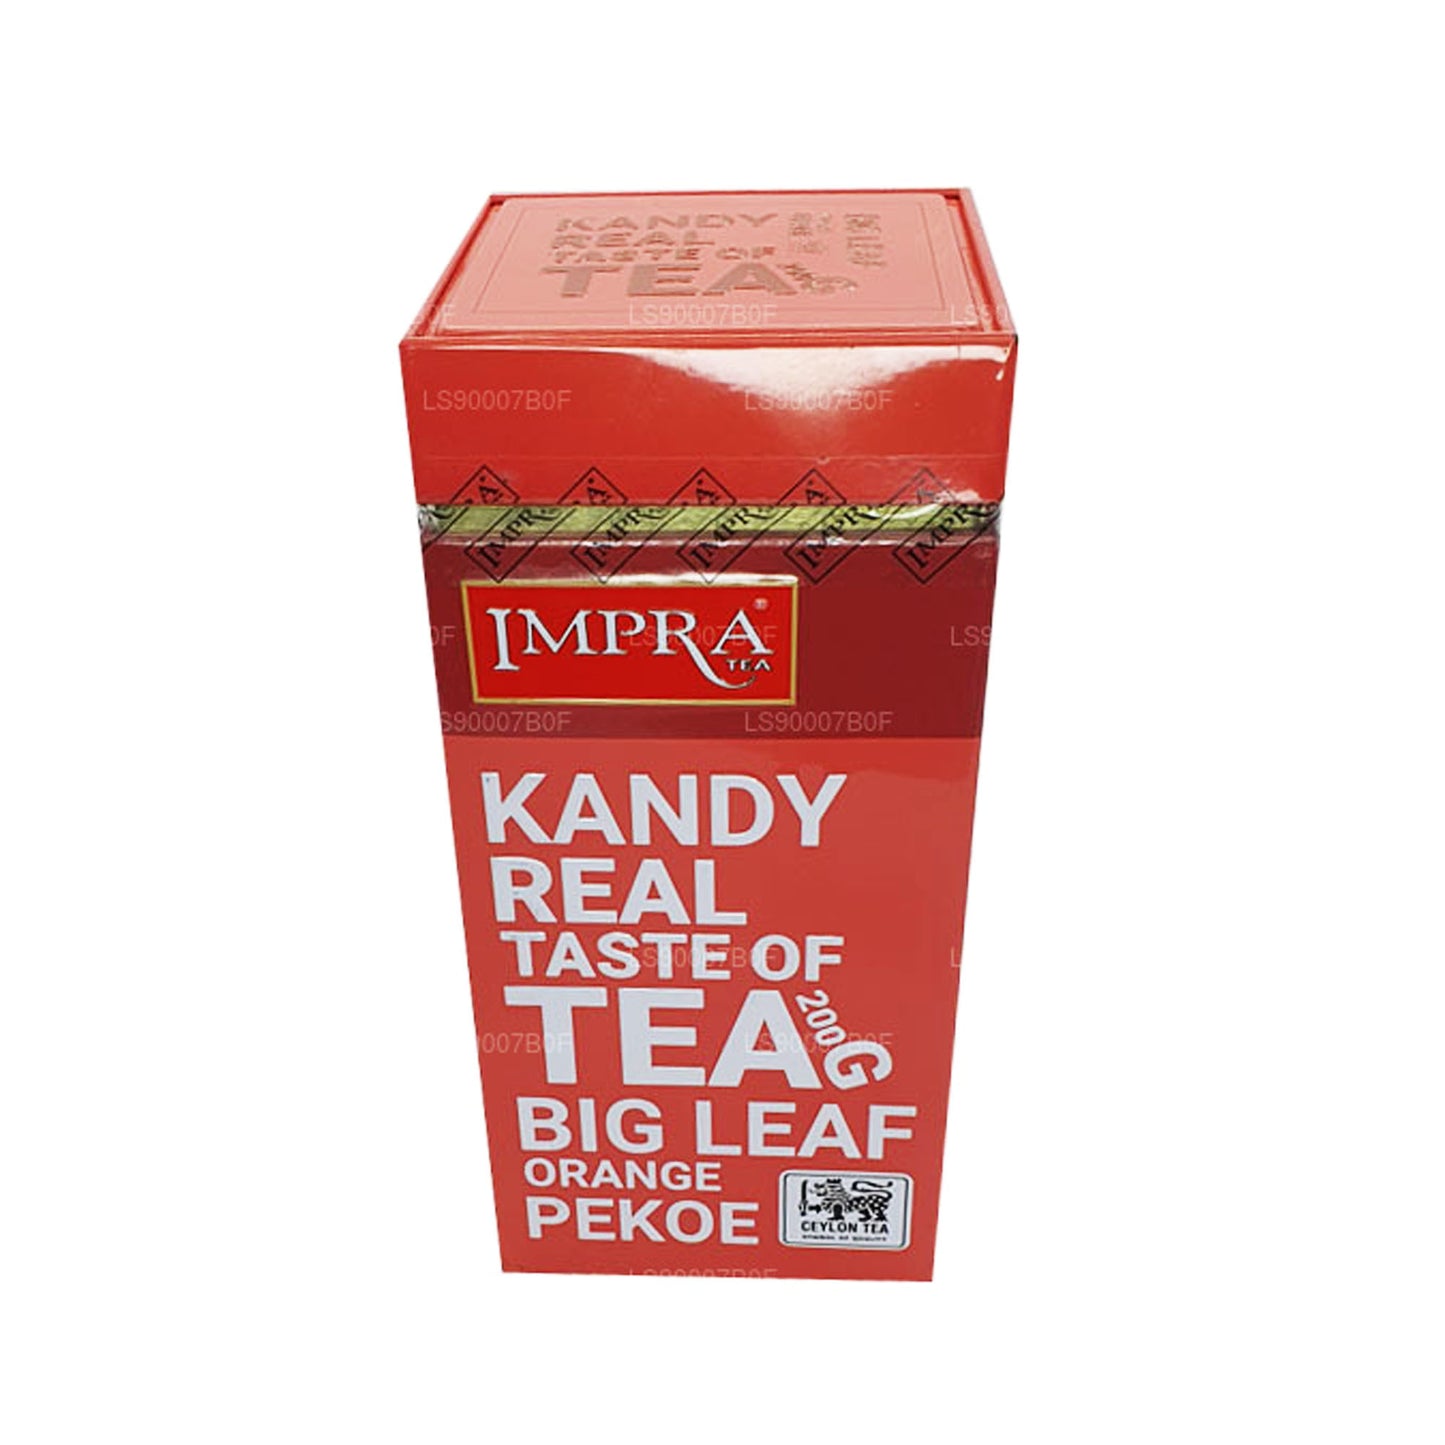 Impra Kandy Taste of Tea Suur Leaf oranž Pekoe (200g) Meatal Caddy